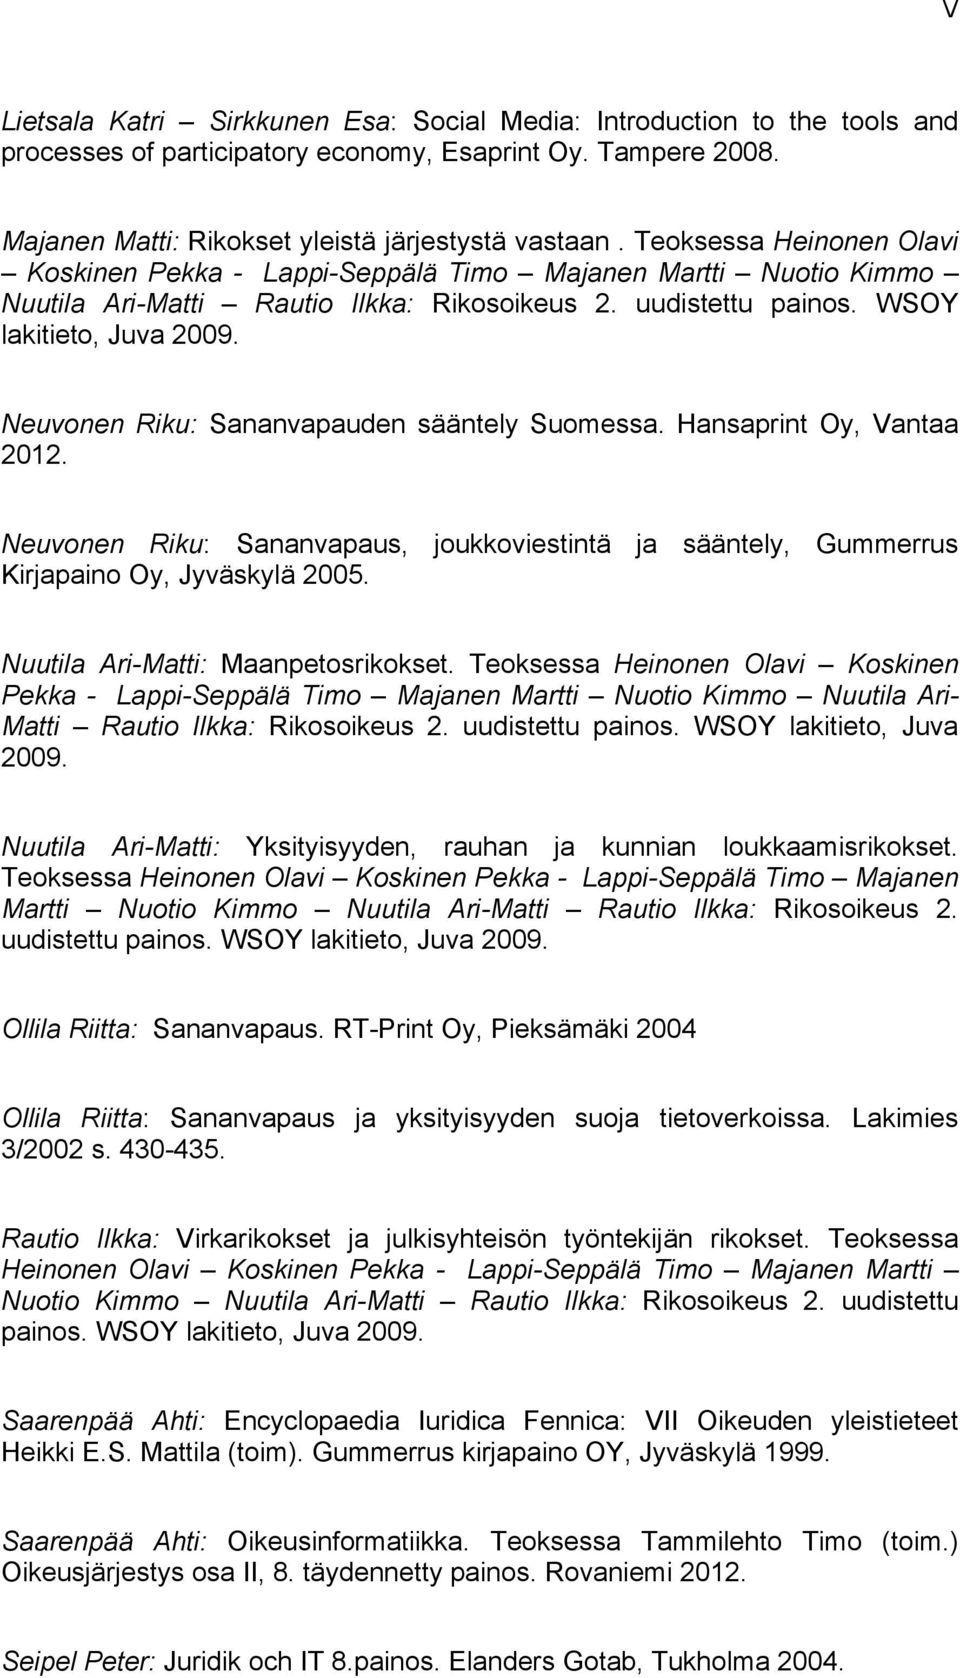 Neuvonen Riku: Sananvapauden sääntely Suomessa. Hansaprint Oy, Vantaa 2012. Neuvonen Riku: Sananvapaus, joukkoviestintä ja sääntely, Gummerrus Kirjapaino Oy, Jyväskylä 2005.